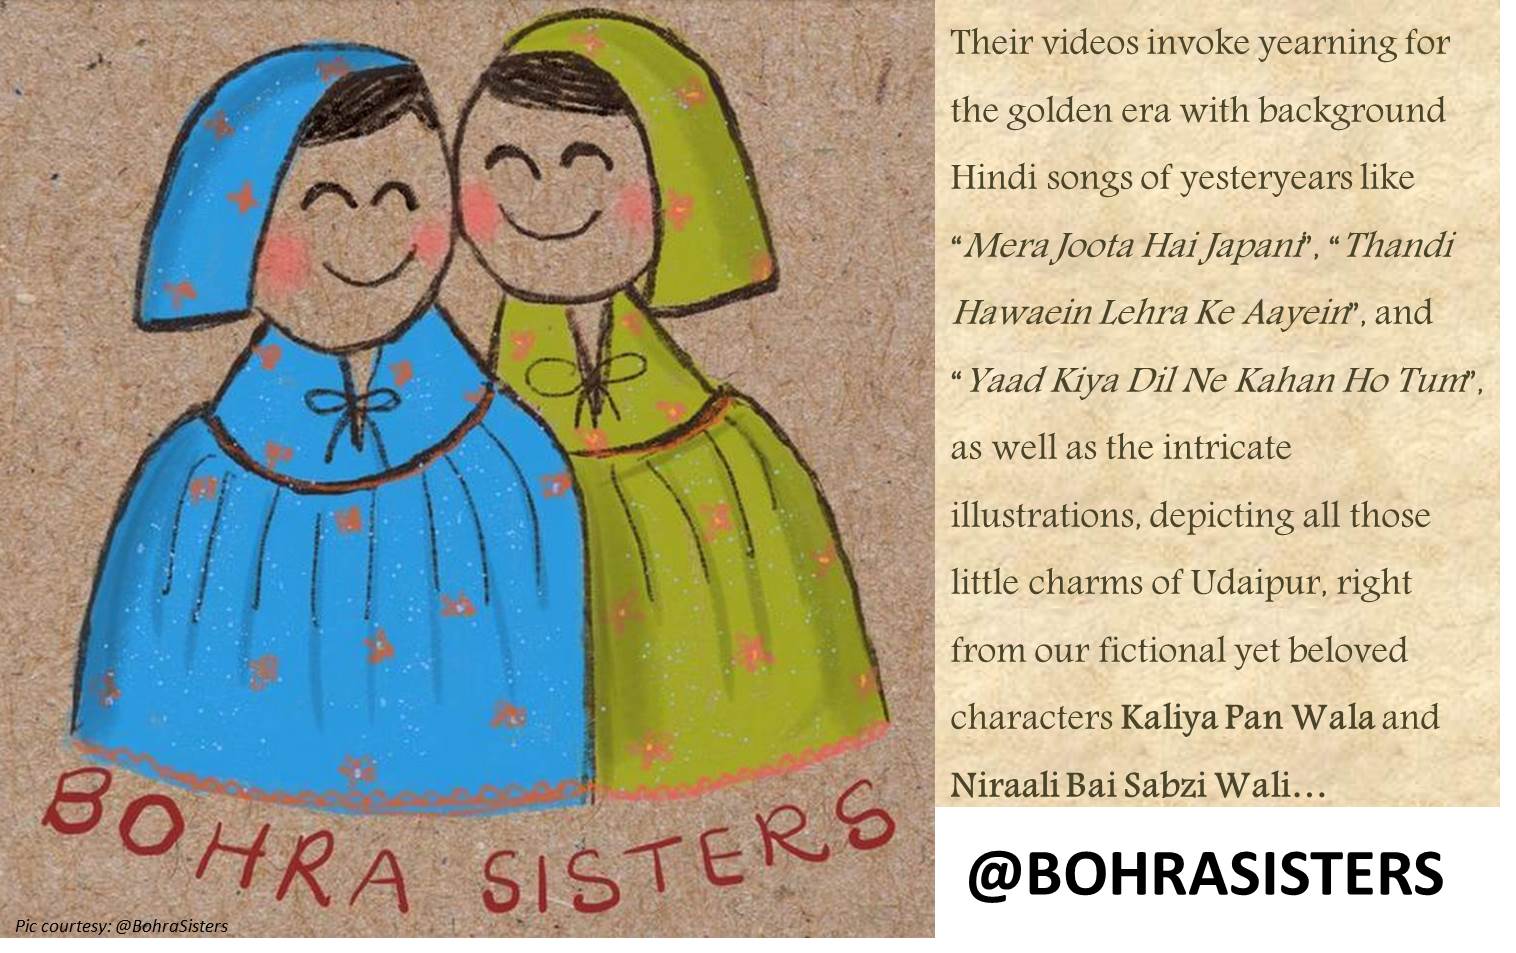 Bohra Sisters from Udaipur recreating memories on Instagram